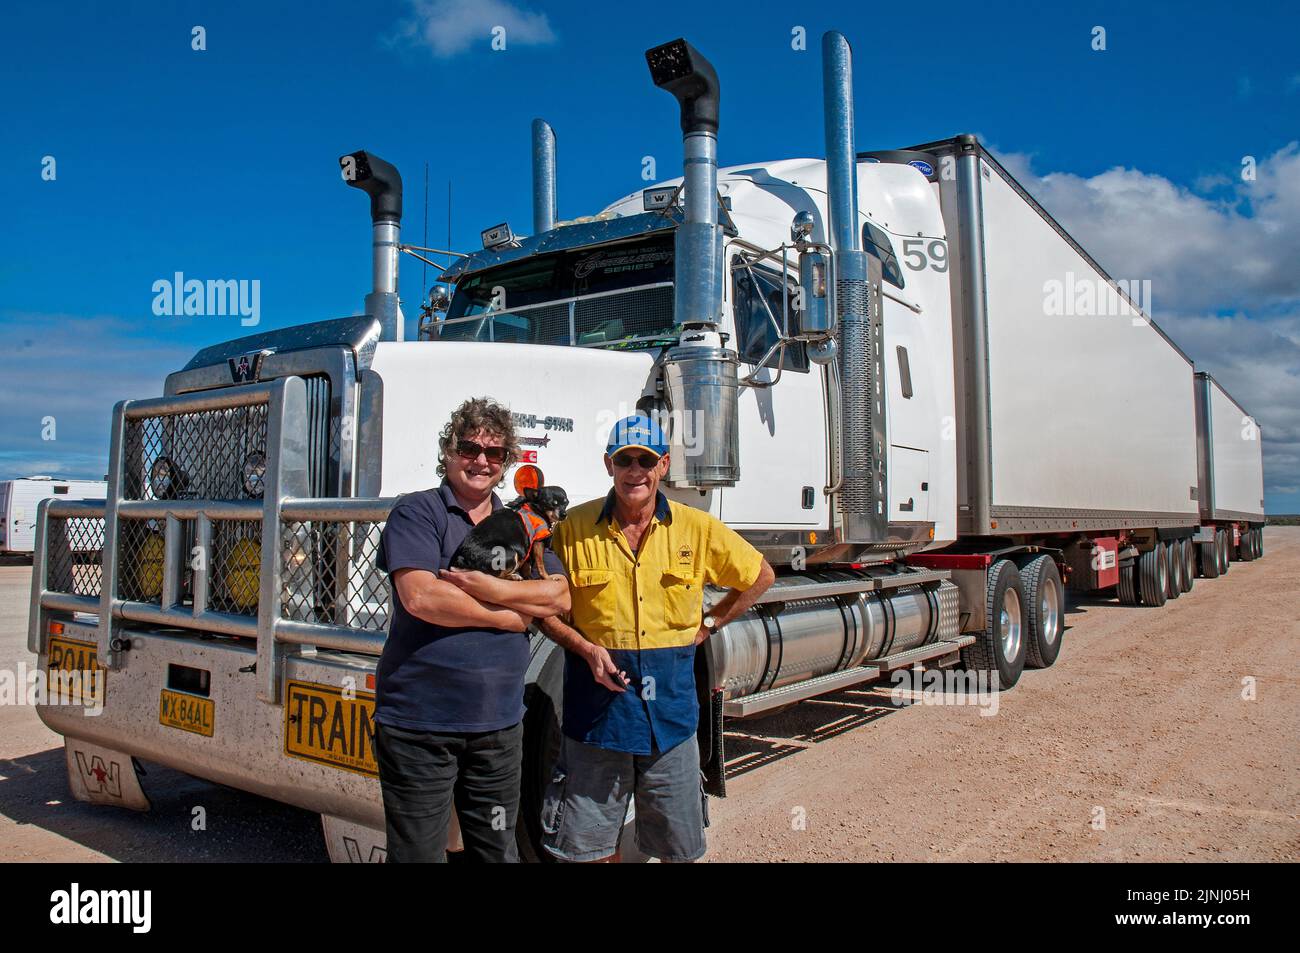 Die LKW-Fahrerin, die Frau, die Frau, ist mit ihrem B Double Truck unterwegs, in dem sie zwei Mal pro Woche 75 Tonnen Tomaten zwischen Perth und Adelaide transportiert und eine Strecke von mehr als 10.000 km zurückgelegt hat Stockfoto